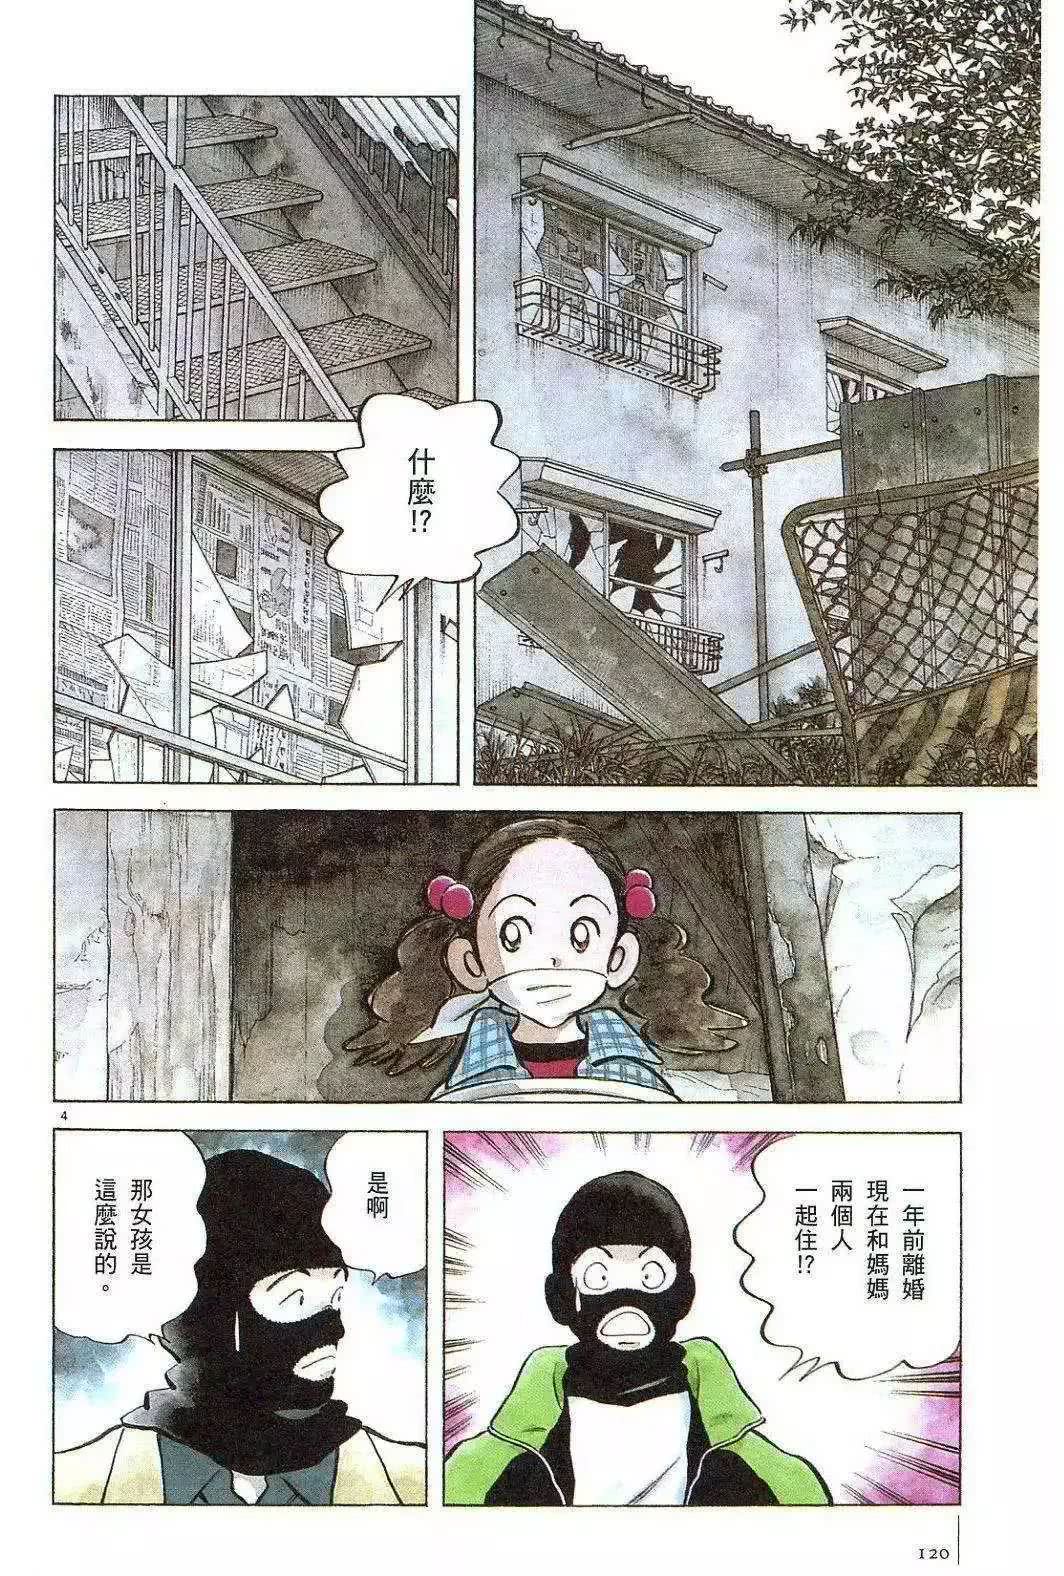 人性漫画《绑架》小女孩与绑匪的故事